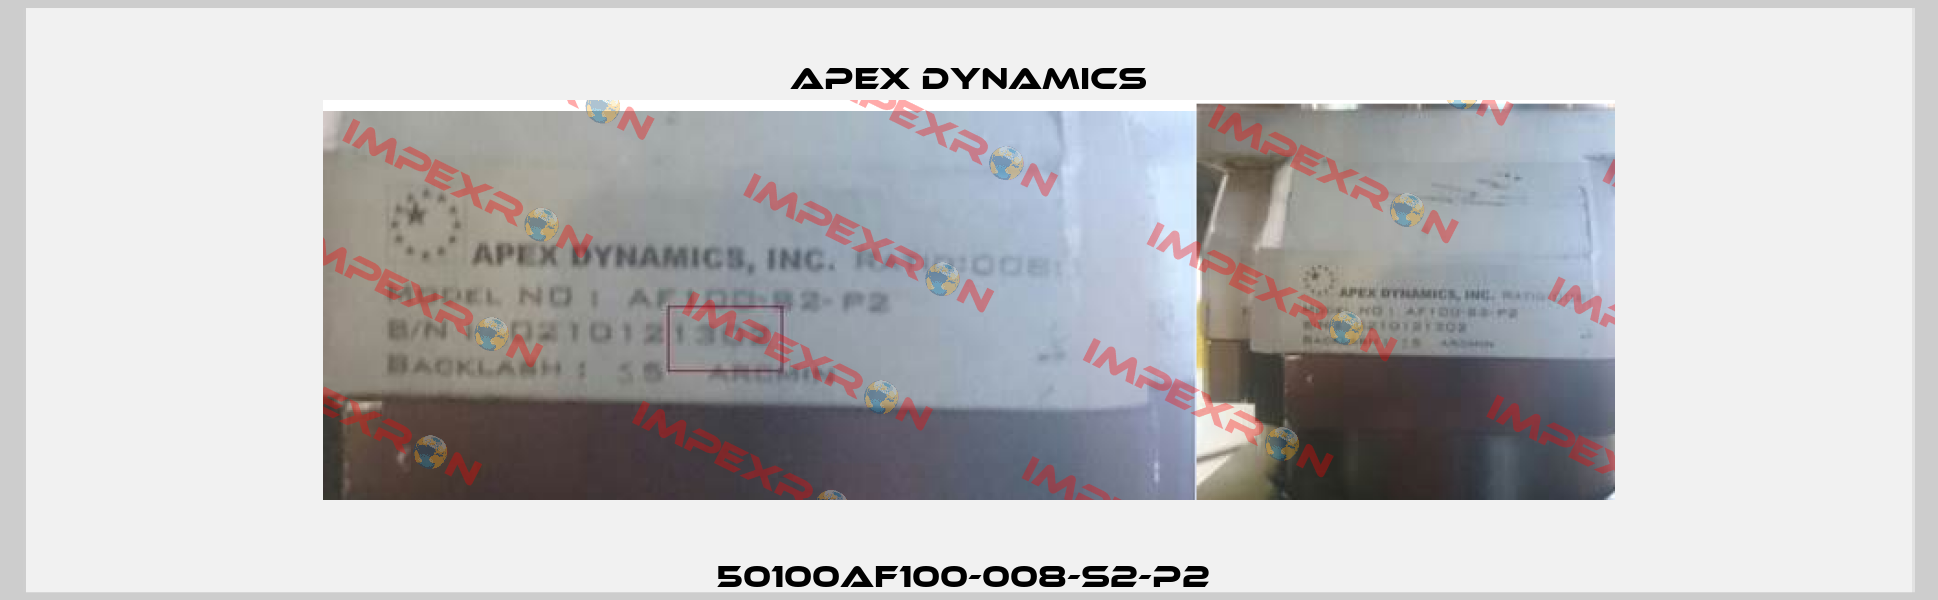 50100AF100-008-S2-P2  Apex Dynamics